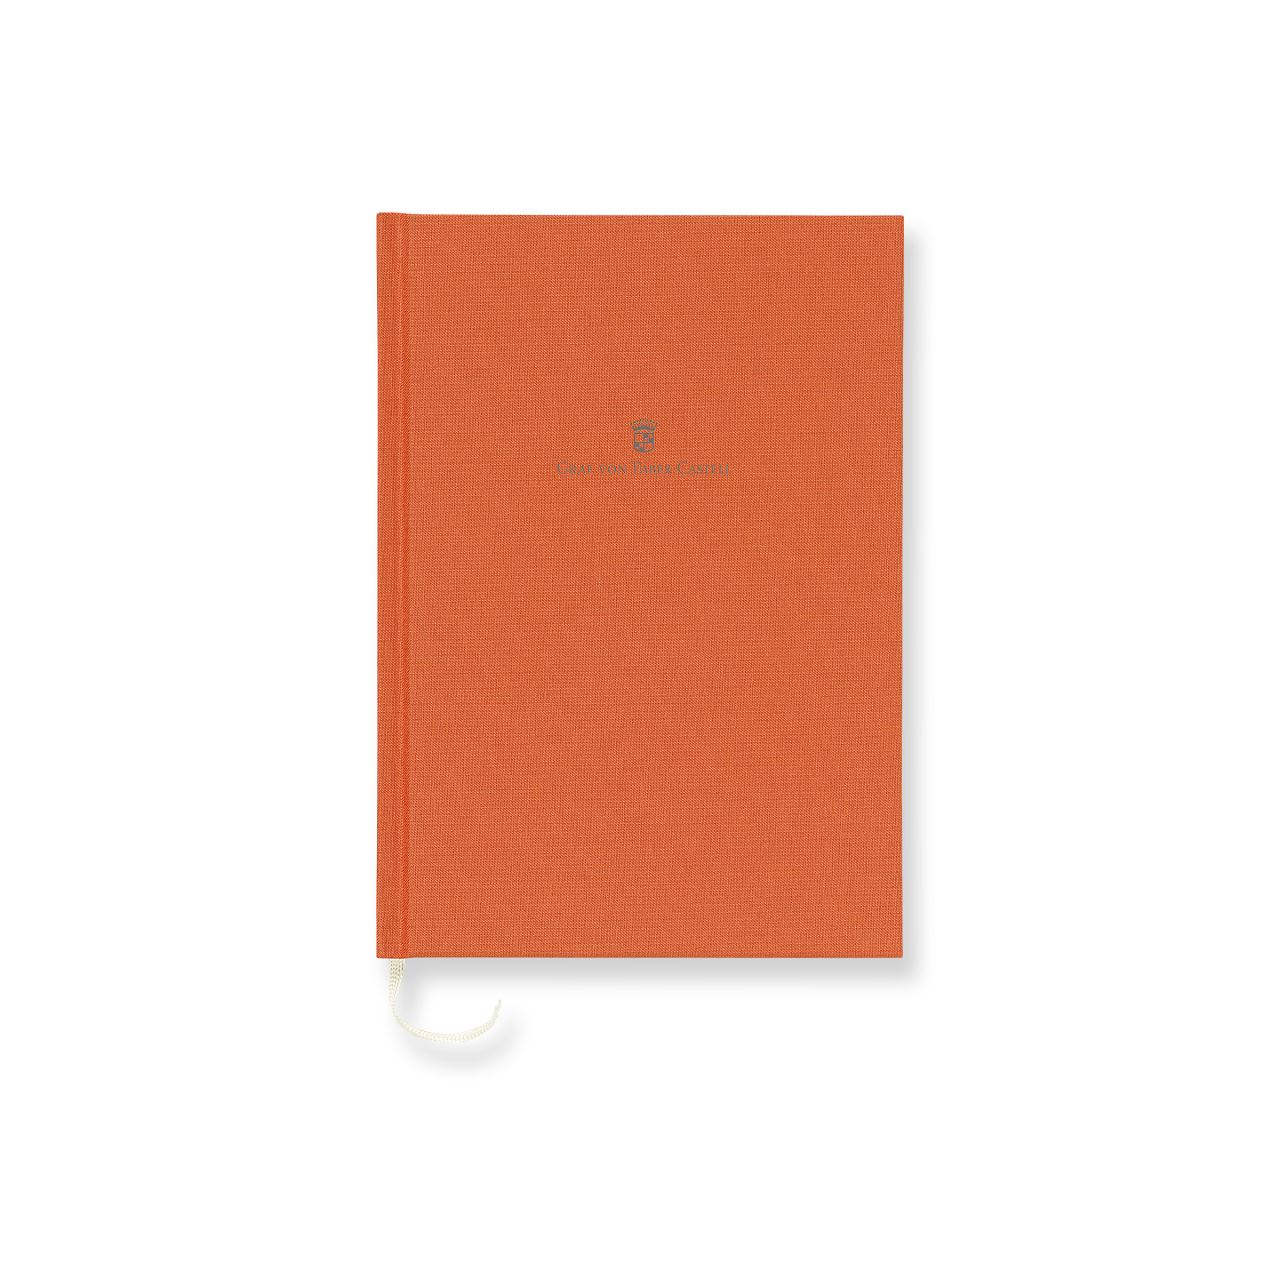 Graf-von-Faber-Castell - Book con copertina in lino A5 Arancio